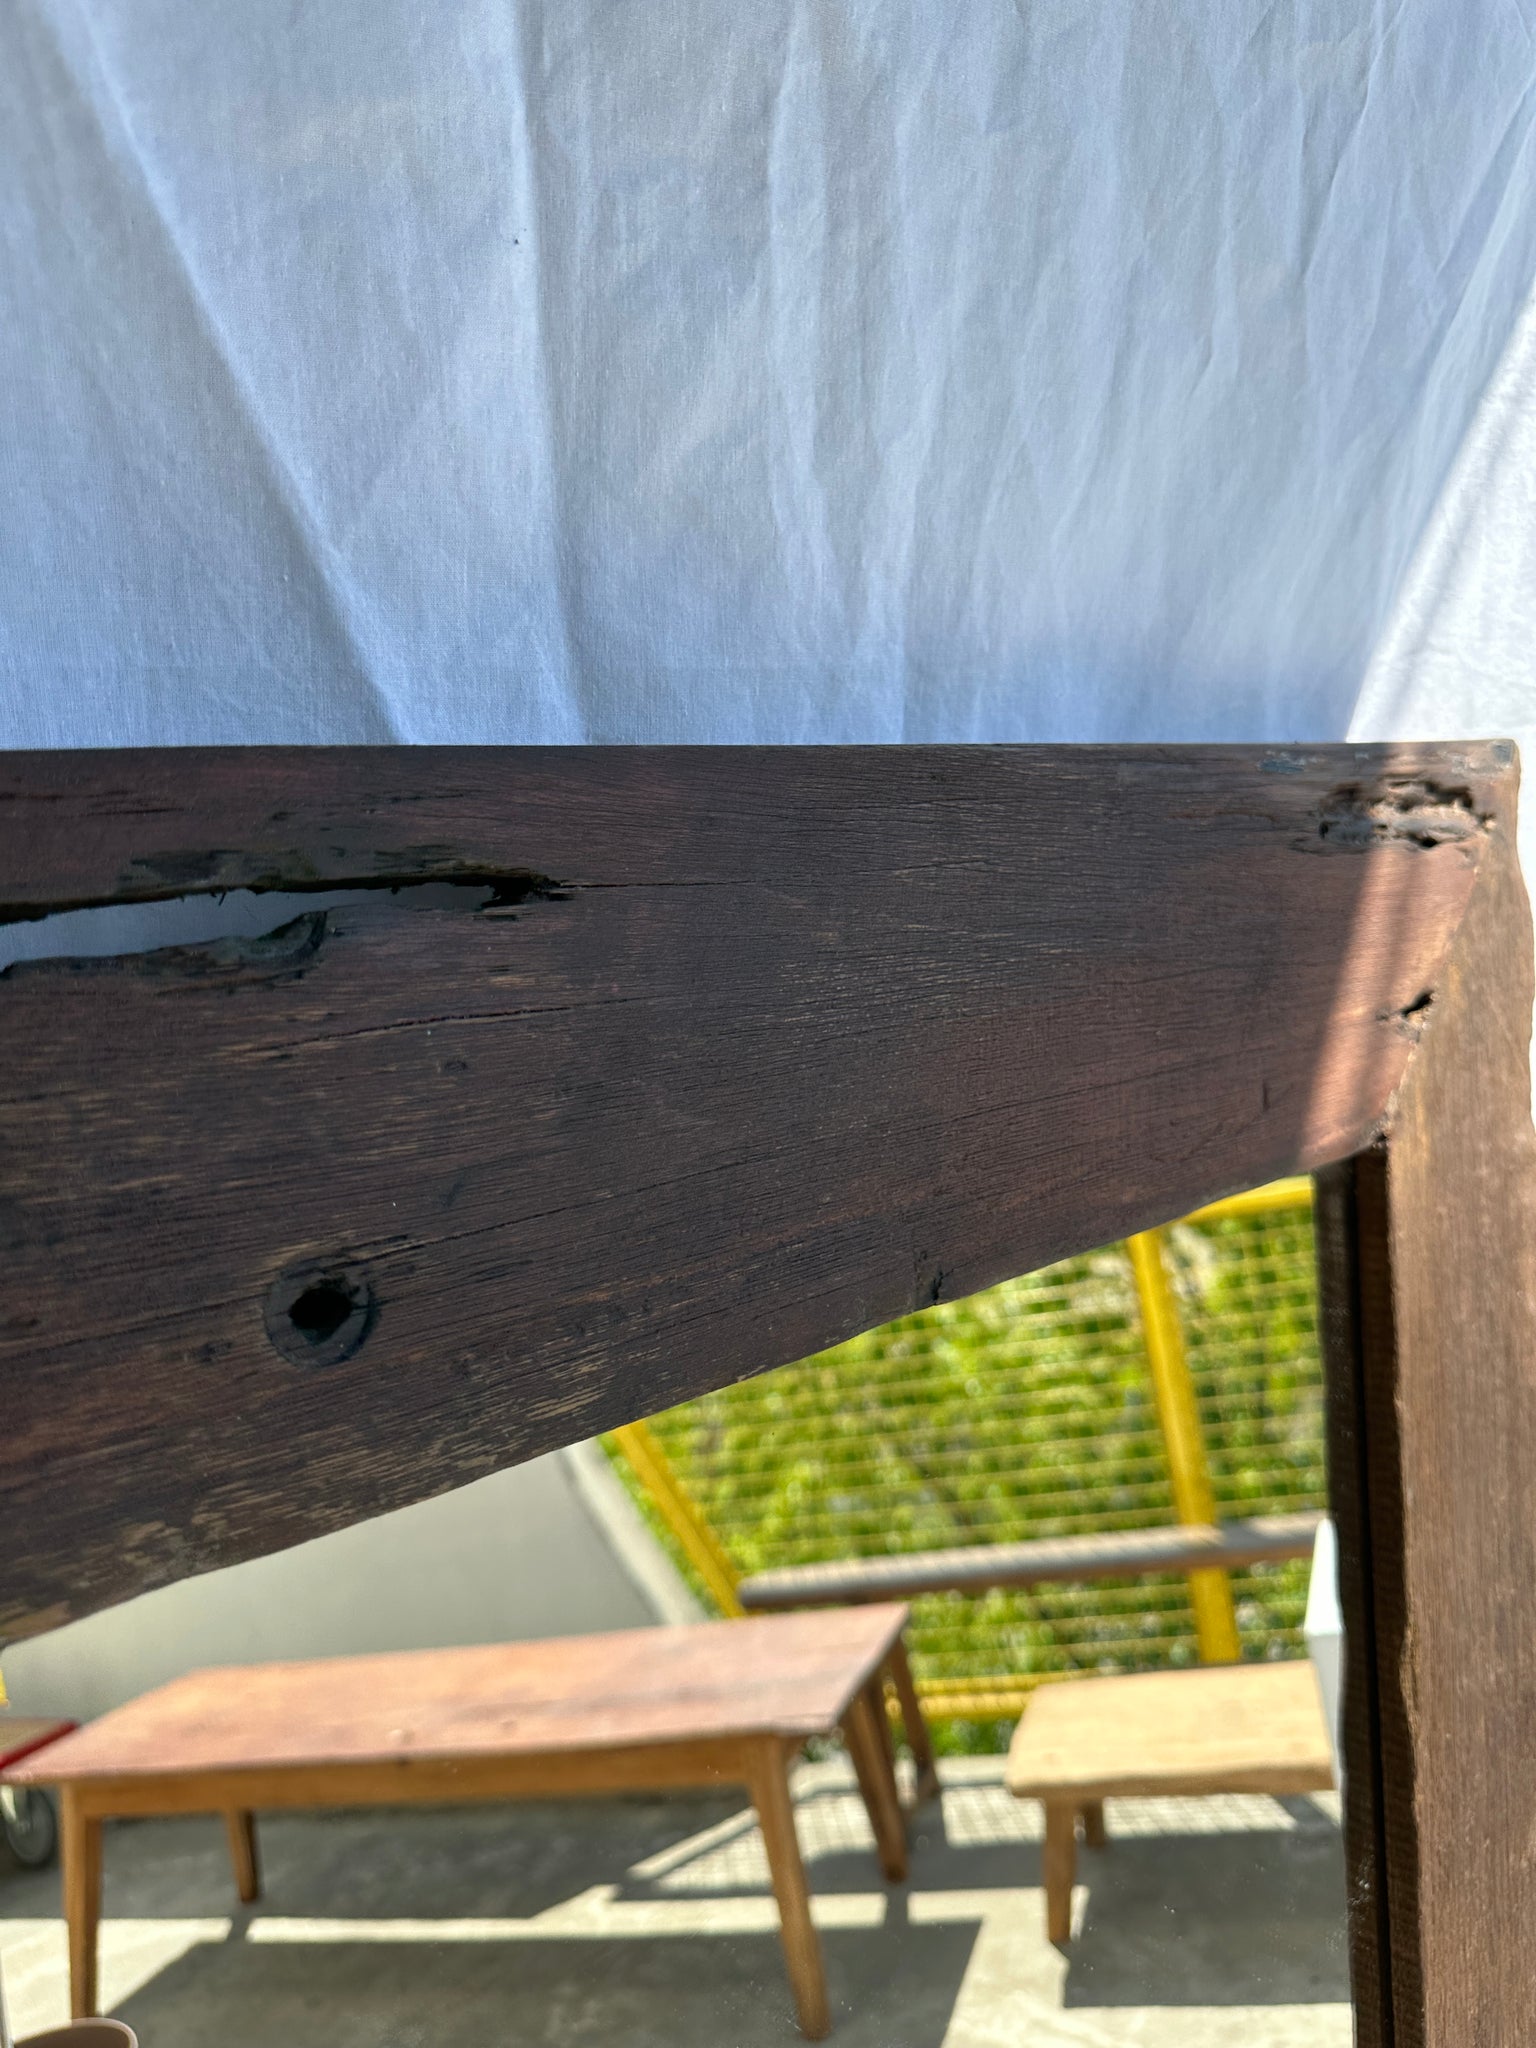 Miroir cadre en bois de fer ancien exotique brutaliste H:139cm